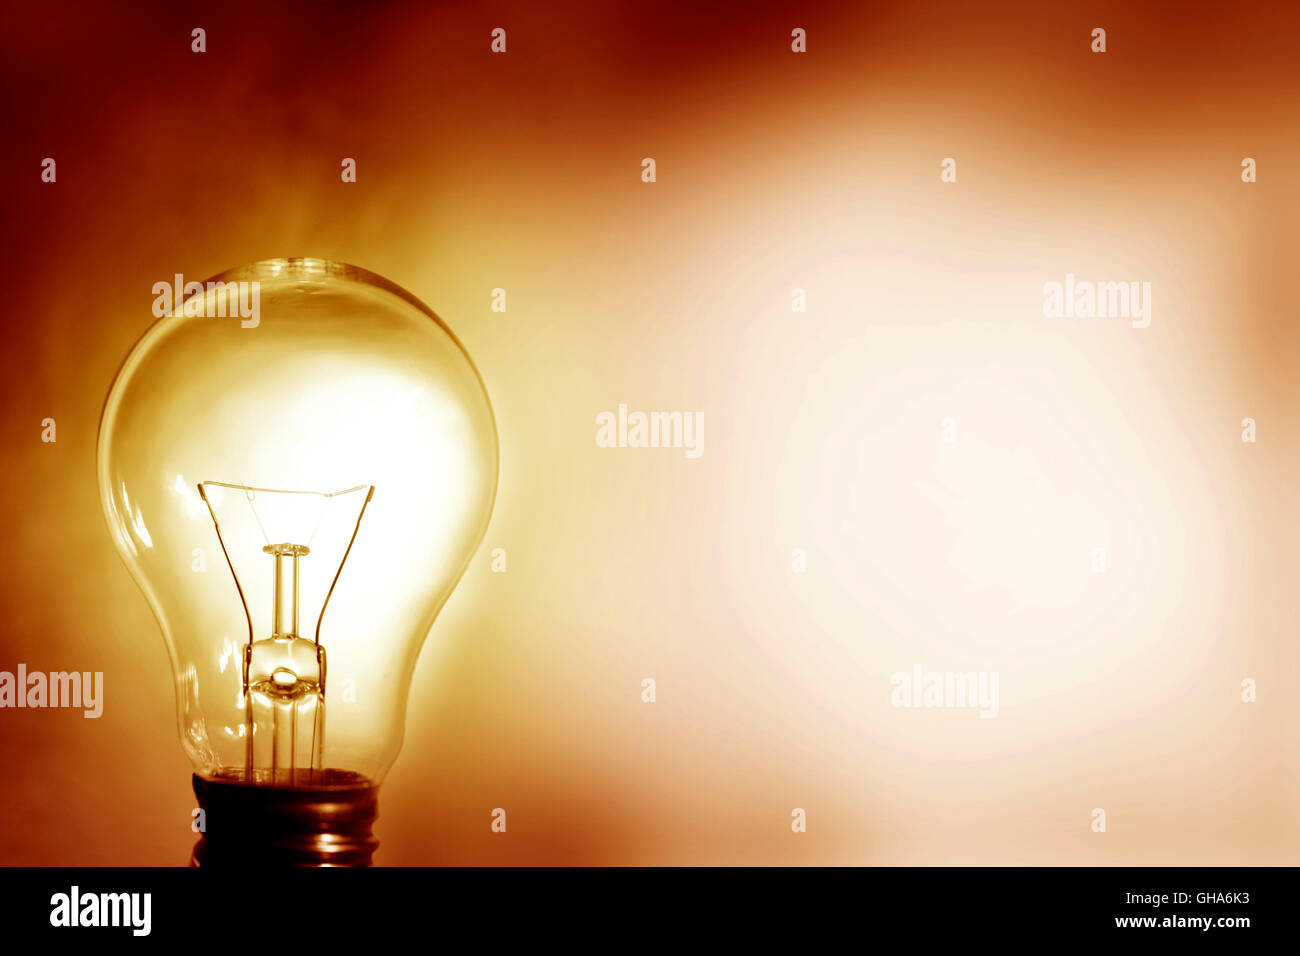 Glühbirne leuchtet. Kopie von Werbeflächen Stockfotografie - Alamy